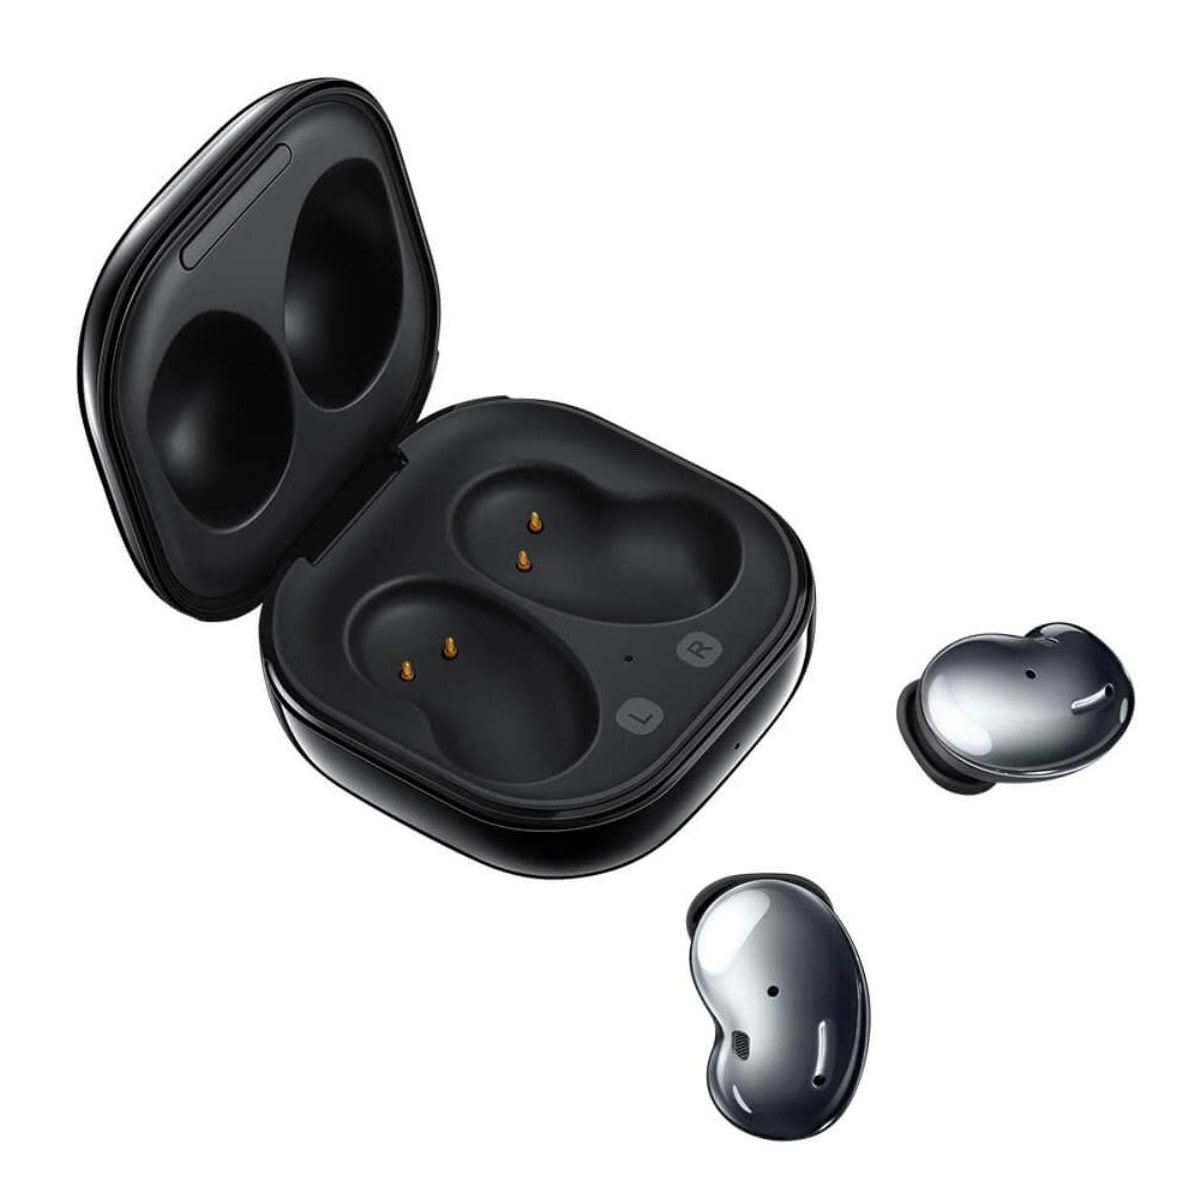 Presentamos los auriculares inalámbricos abiertos WH-CH520 de Sony